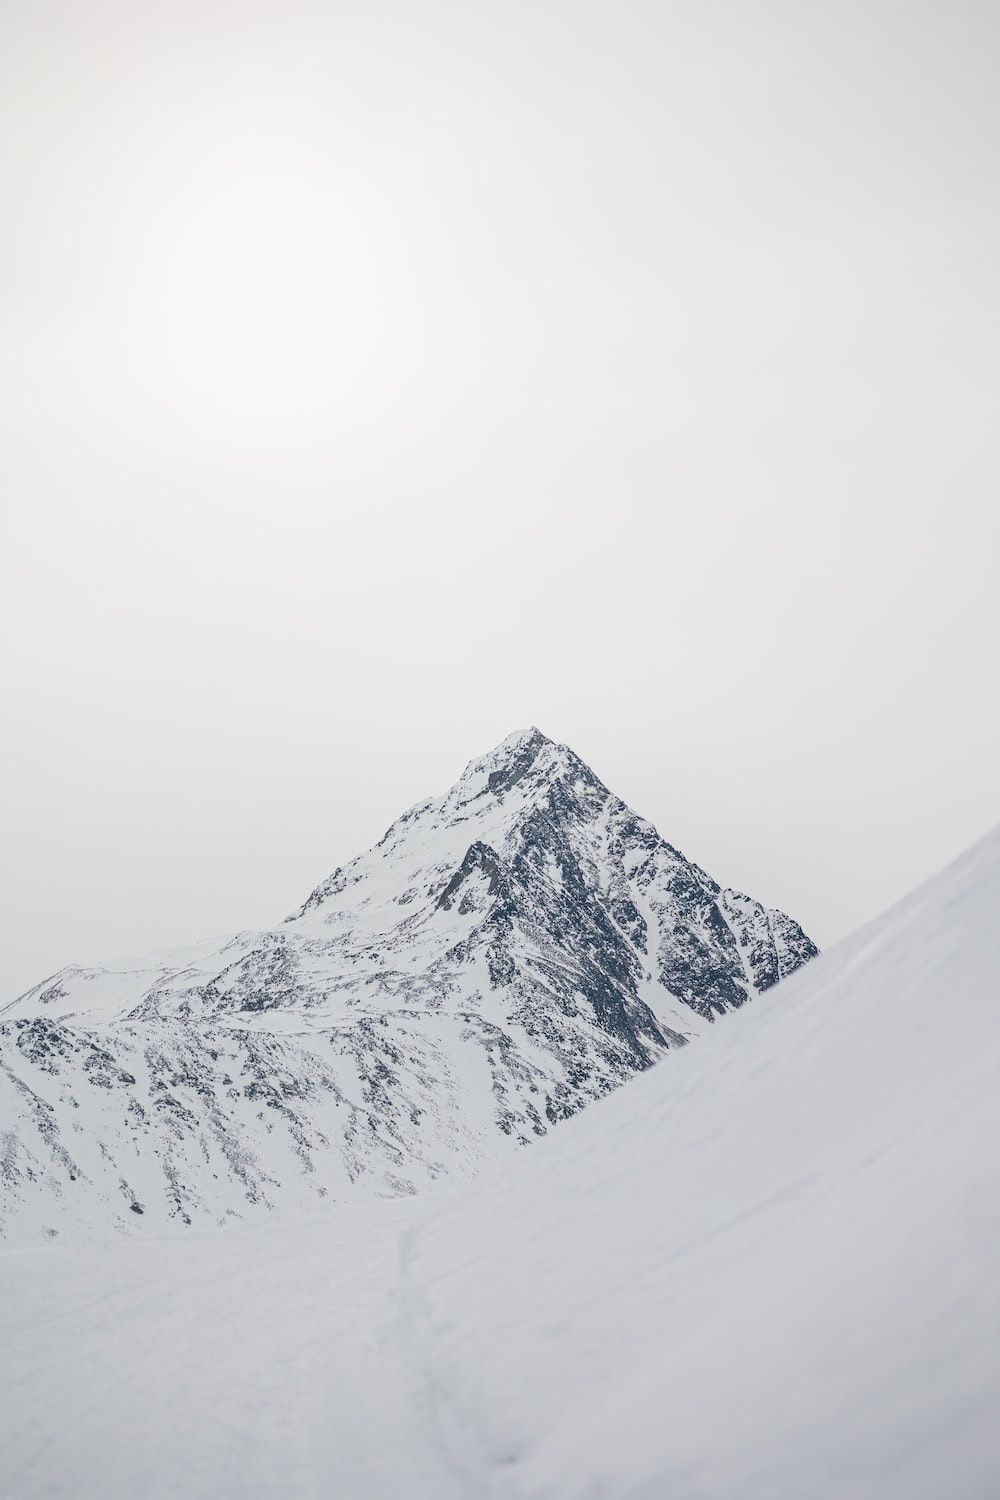  Berge Winter Hintergrundbild 1000x1500. Foto zum Thema Eine Person, die einen schneebedeckten Berg hinunterfährt